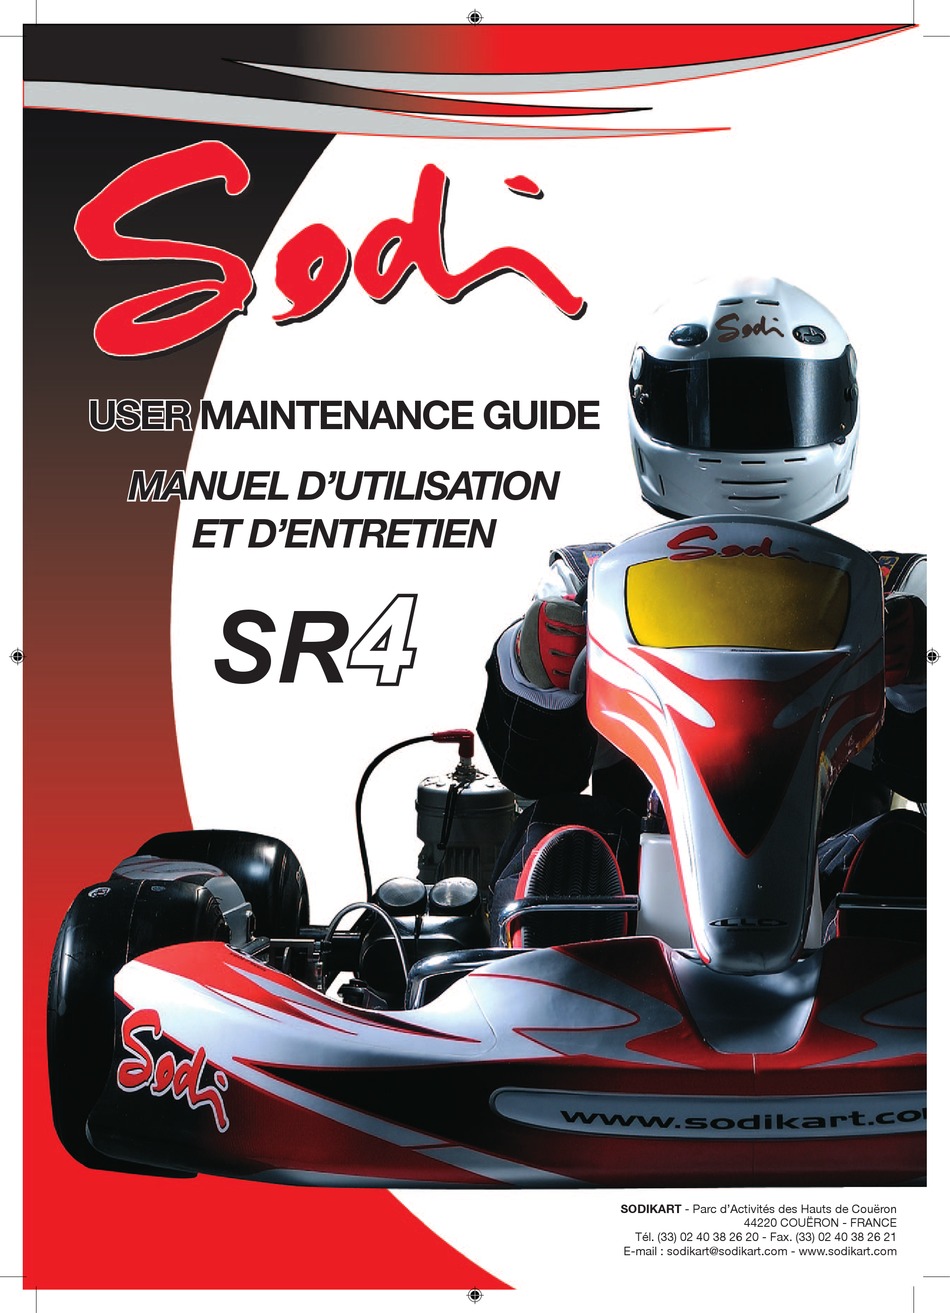 SR4 kart offers exceptional value for money - SODIKART